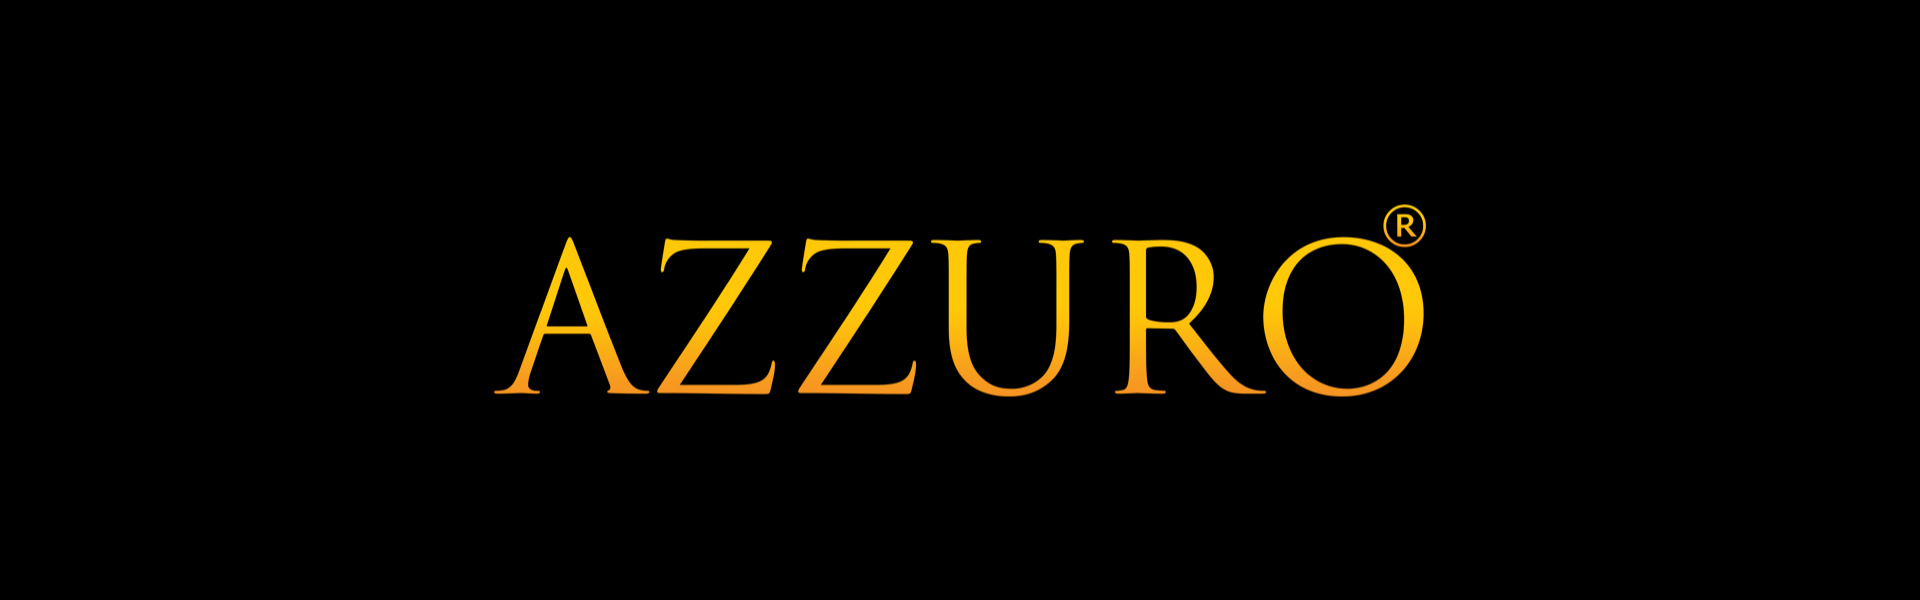 Azzuro Gold